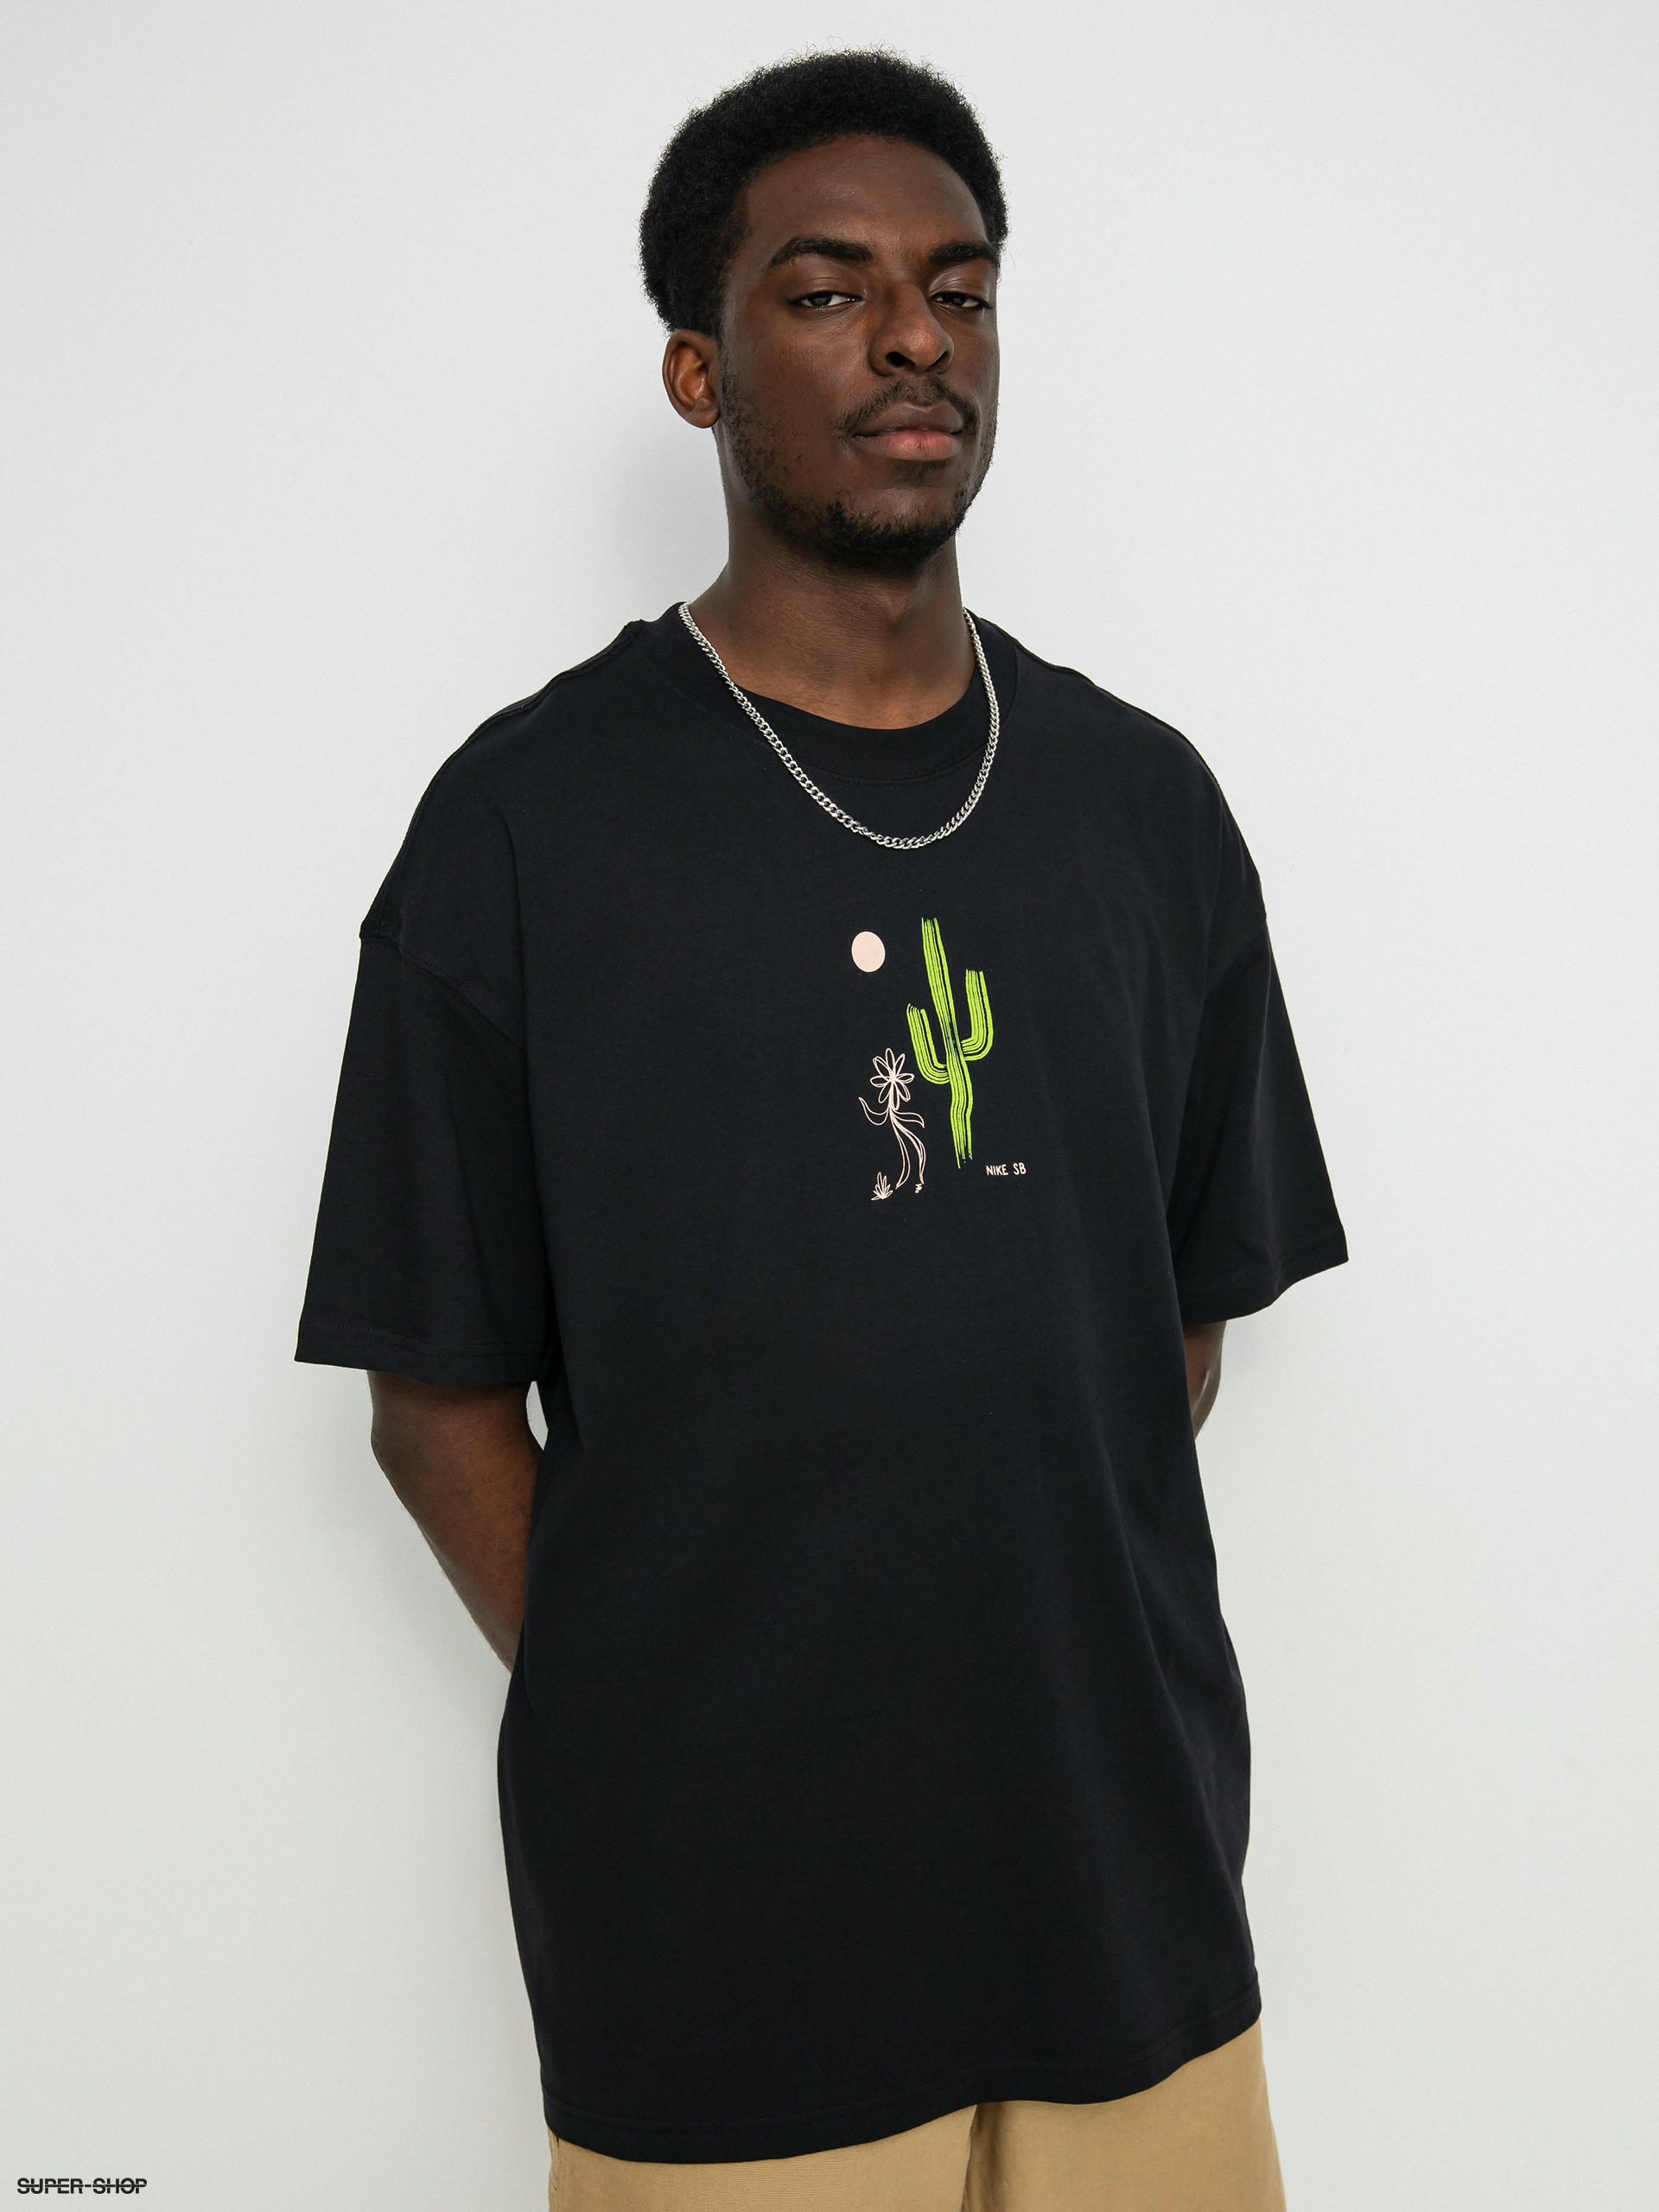 Nike SB Dancing Cactus T-shirt (black)